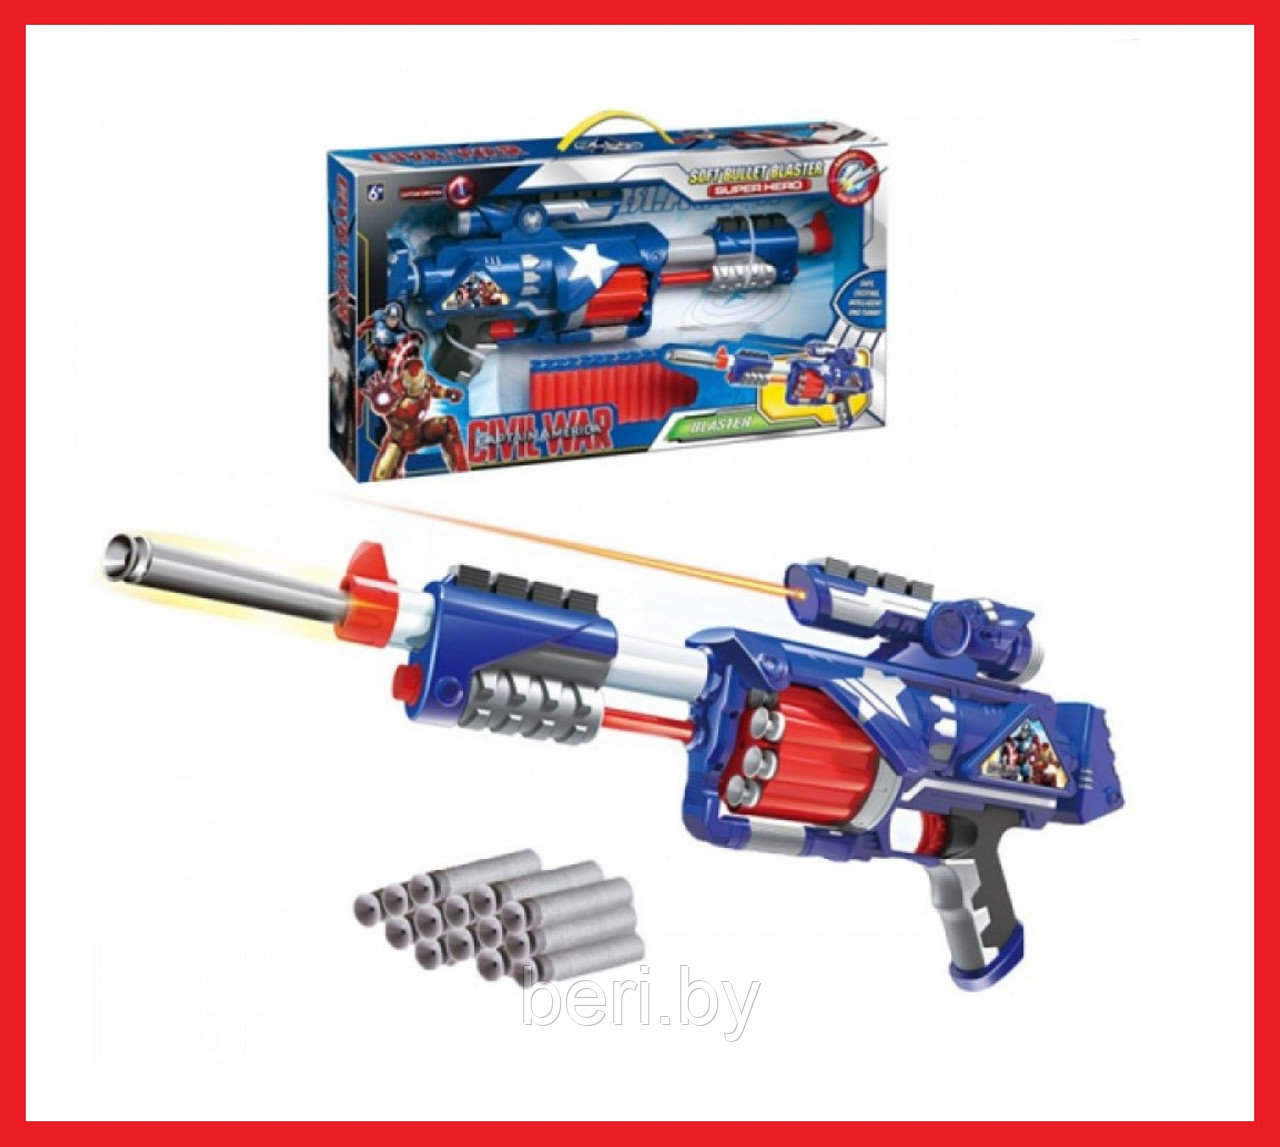 SB361A  Бластер "Капитан Америка", мягкие пули, детское игрушечное оружие, автомат, пистолет детский